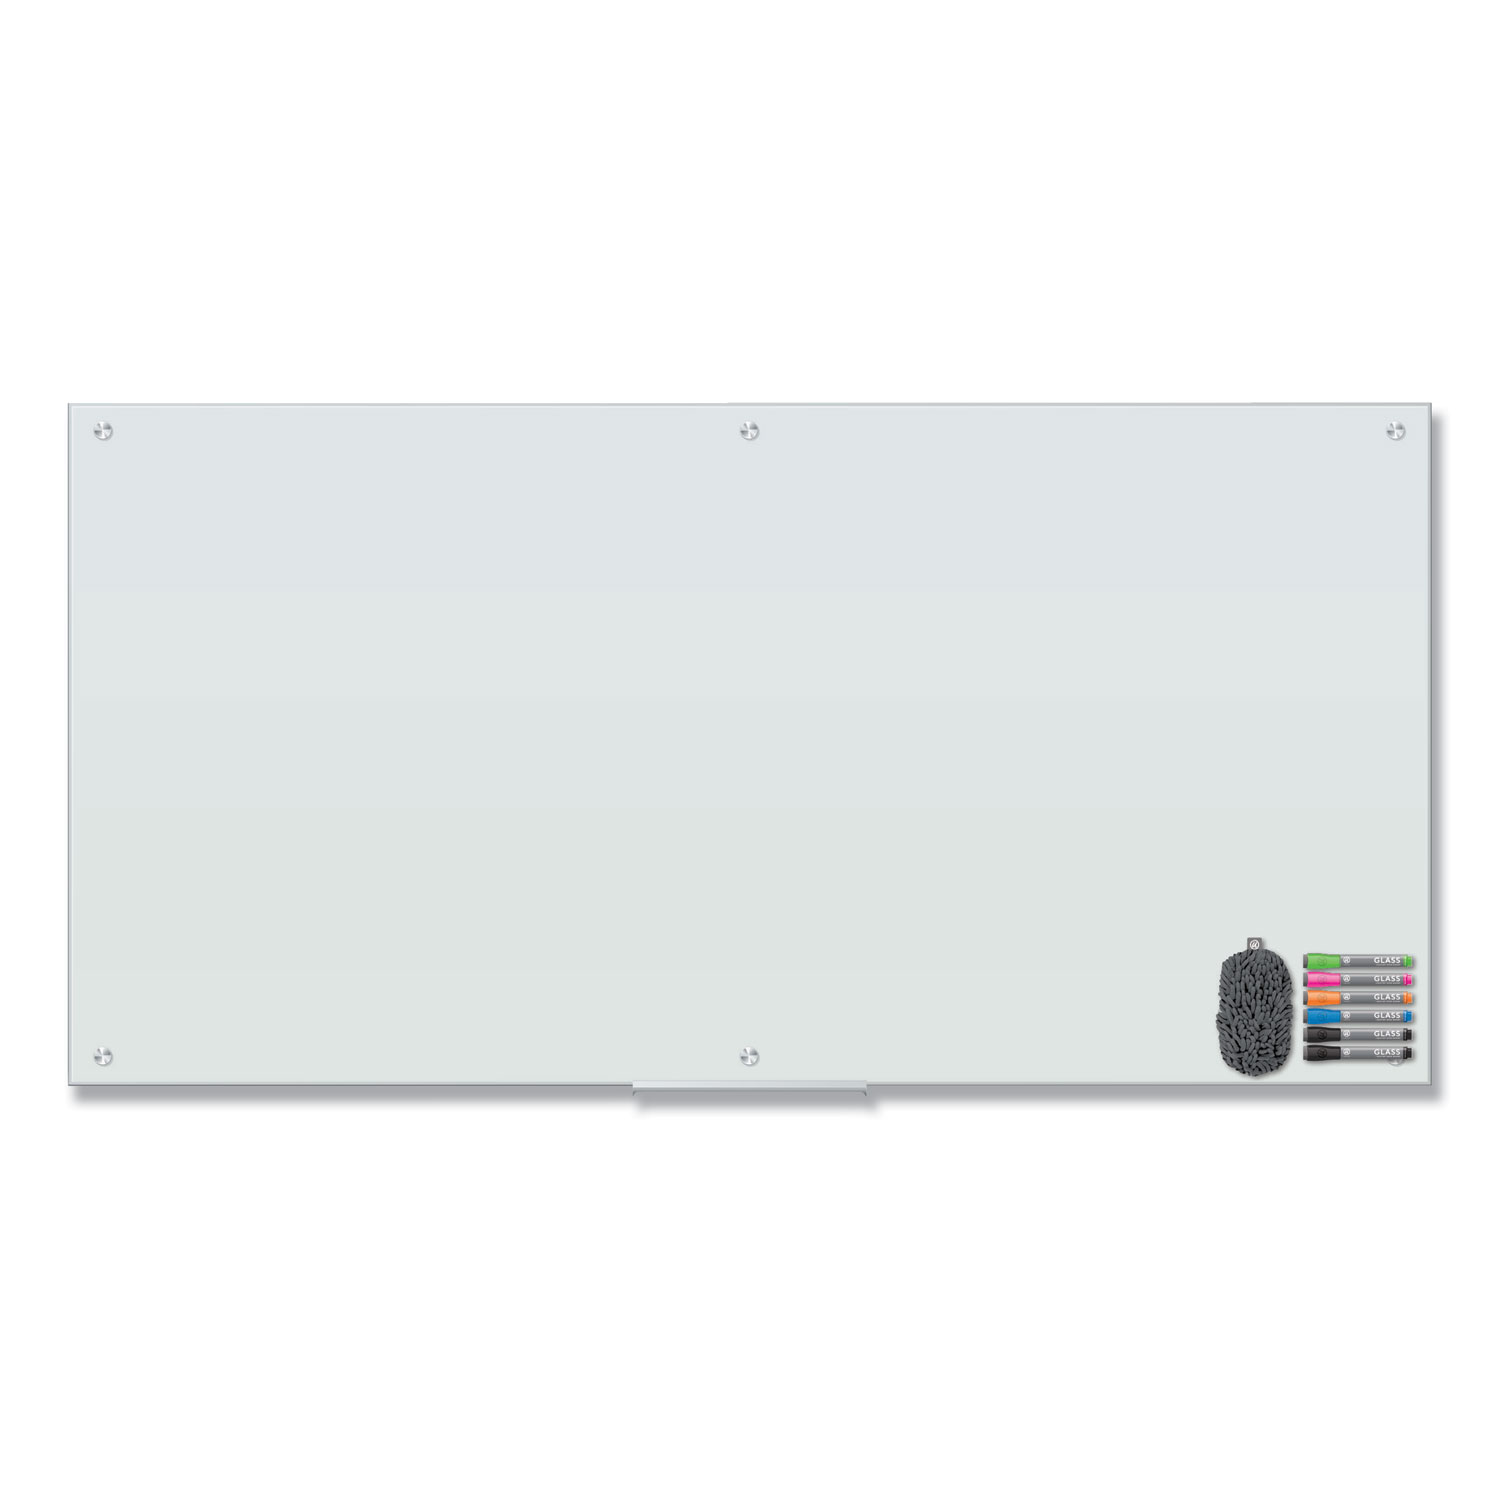  U Brands 3973U00-01 Magnetic Glass Dry Erase Board Value Pack, 72 x 36, White (UBR3973U0001) 